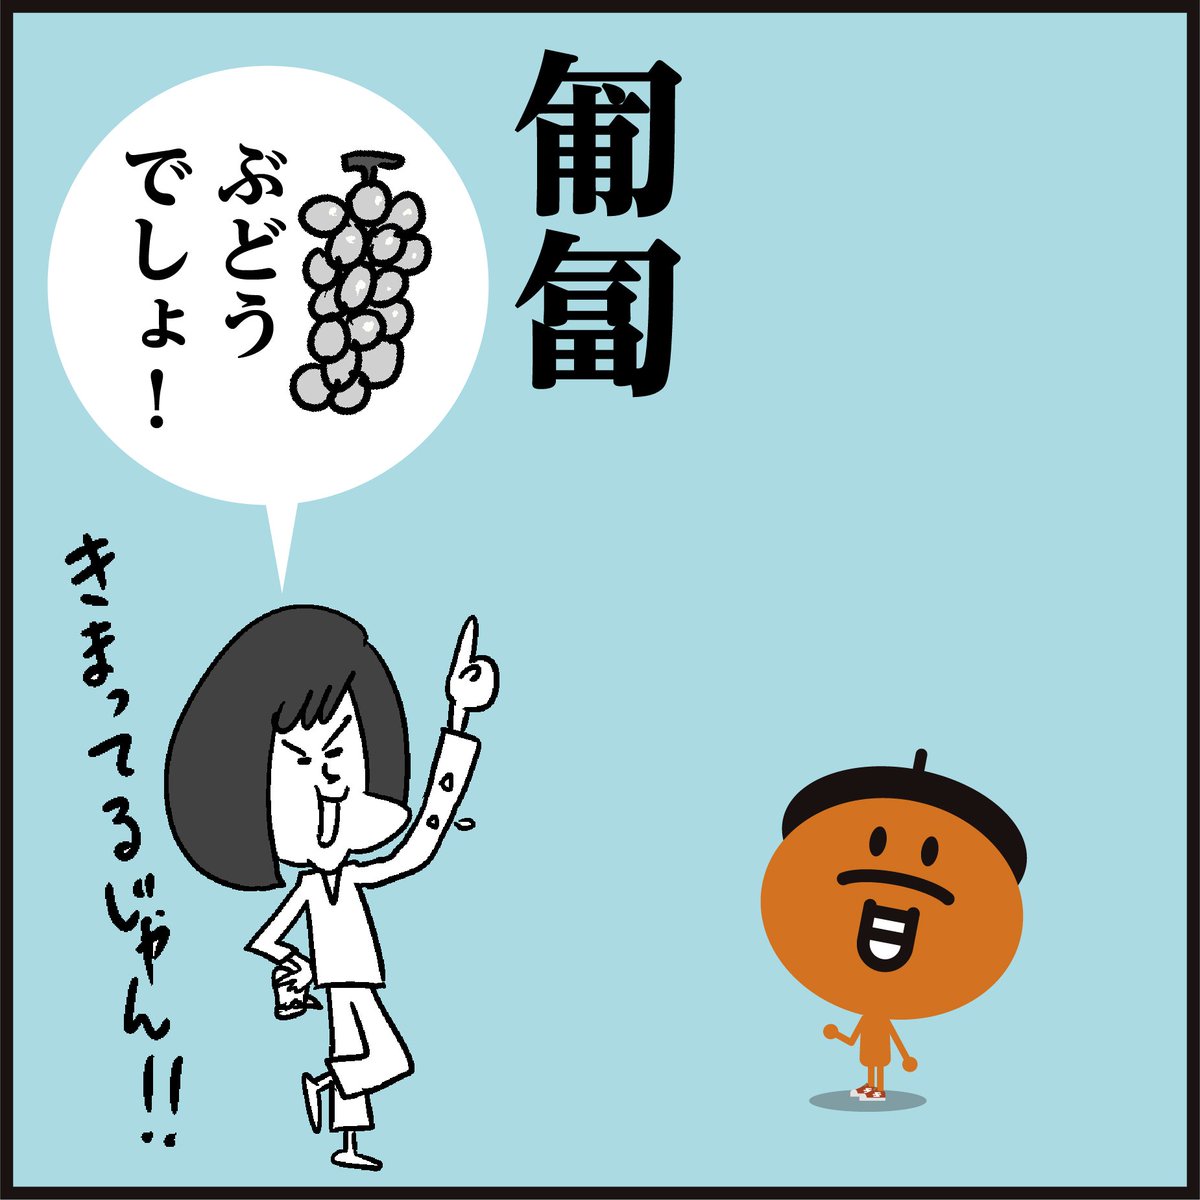 漢字【匍匐】読めますか～?
「葡萄」ではないですよ〜🤔
#イラスト #4コマ漫画 #勉強 #豆知識 #クイズ 